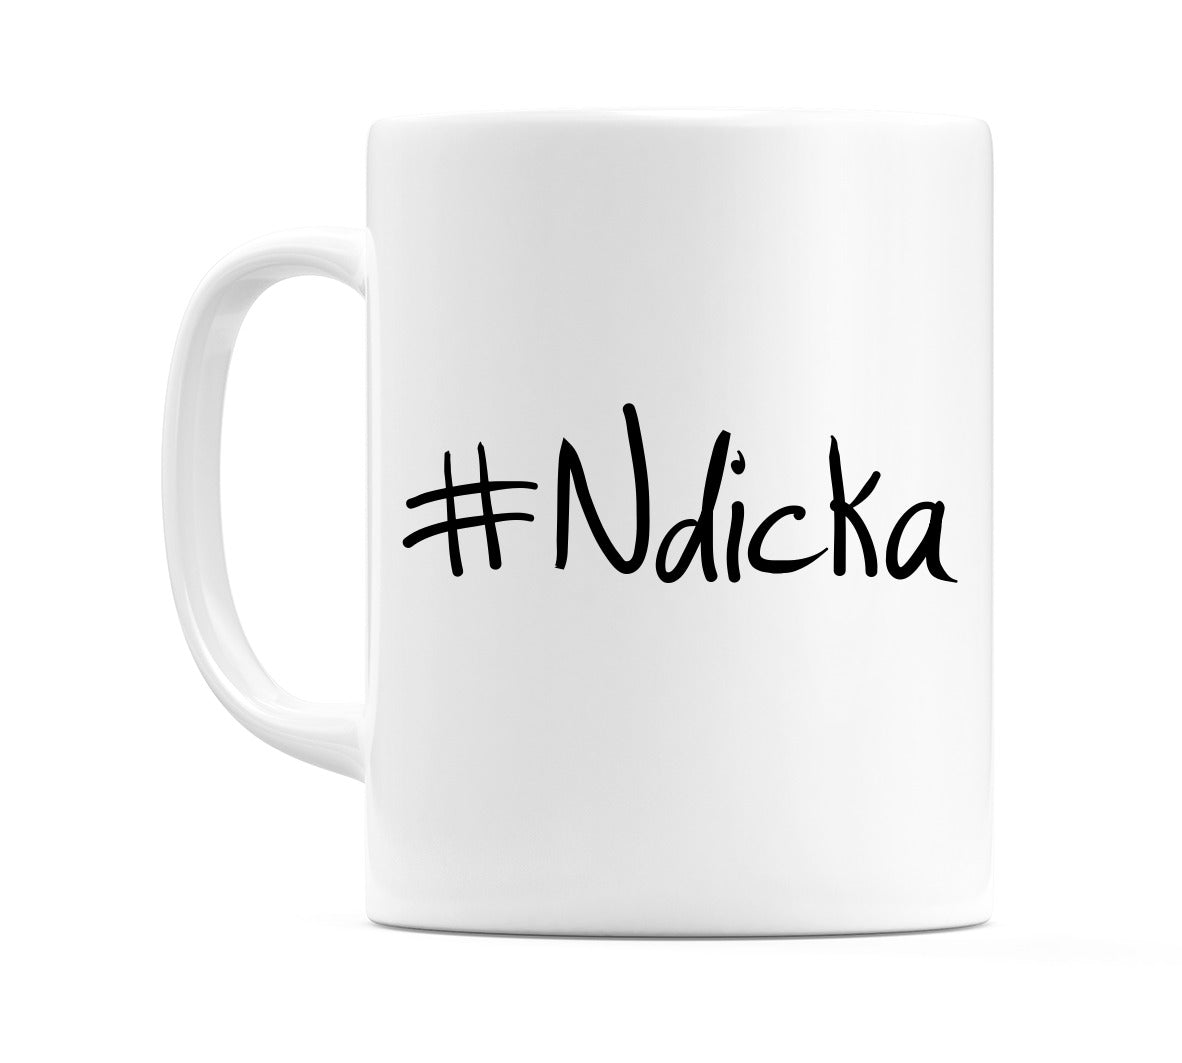 #Ndicka Mug